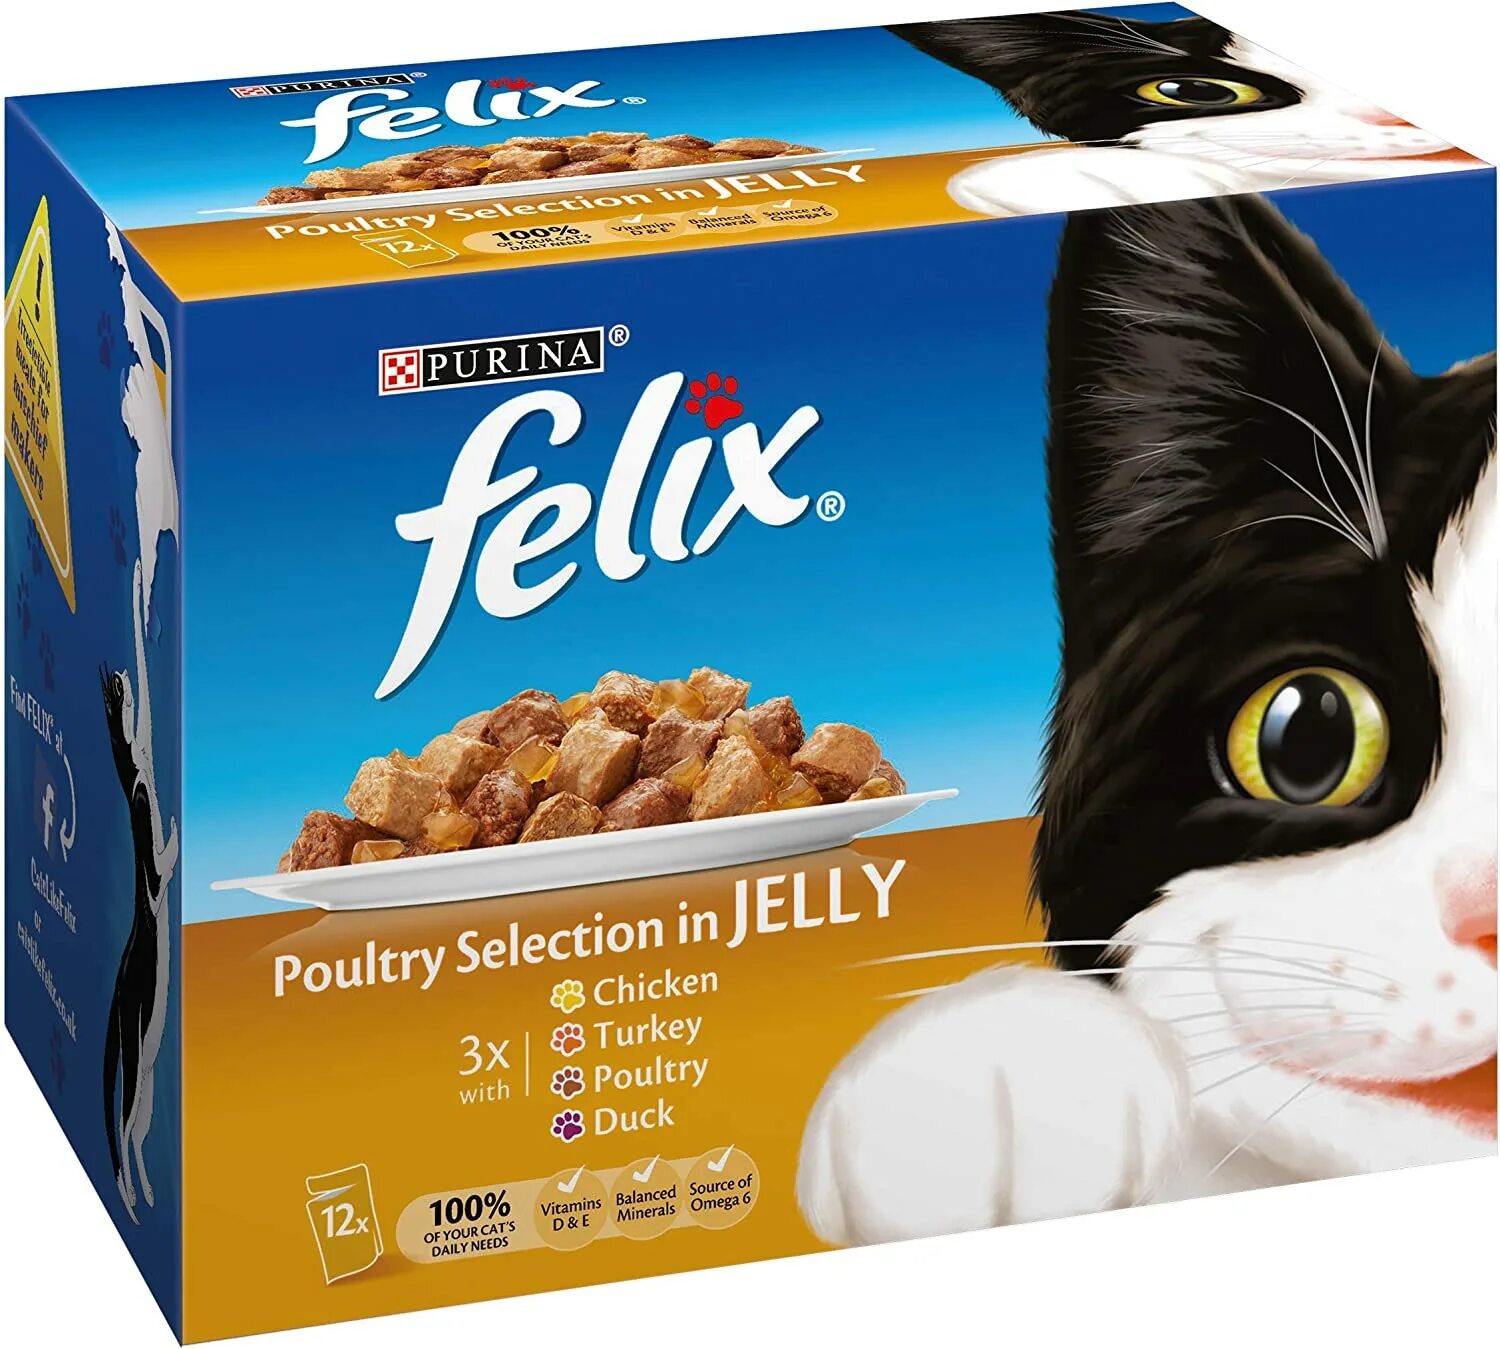 Кошачий корм в коробке. Пакетик корма для кошек.